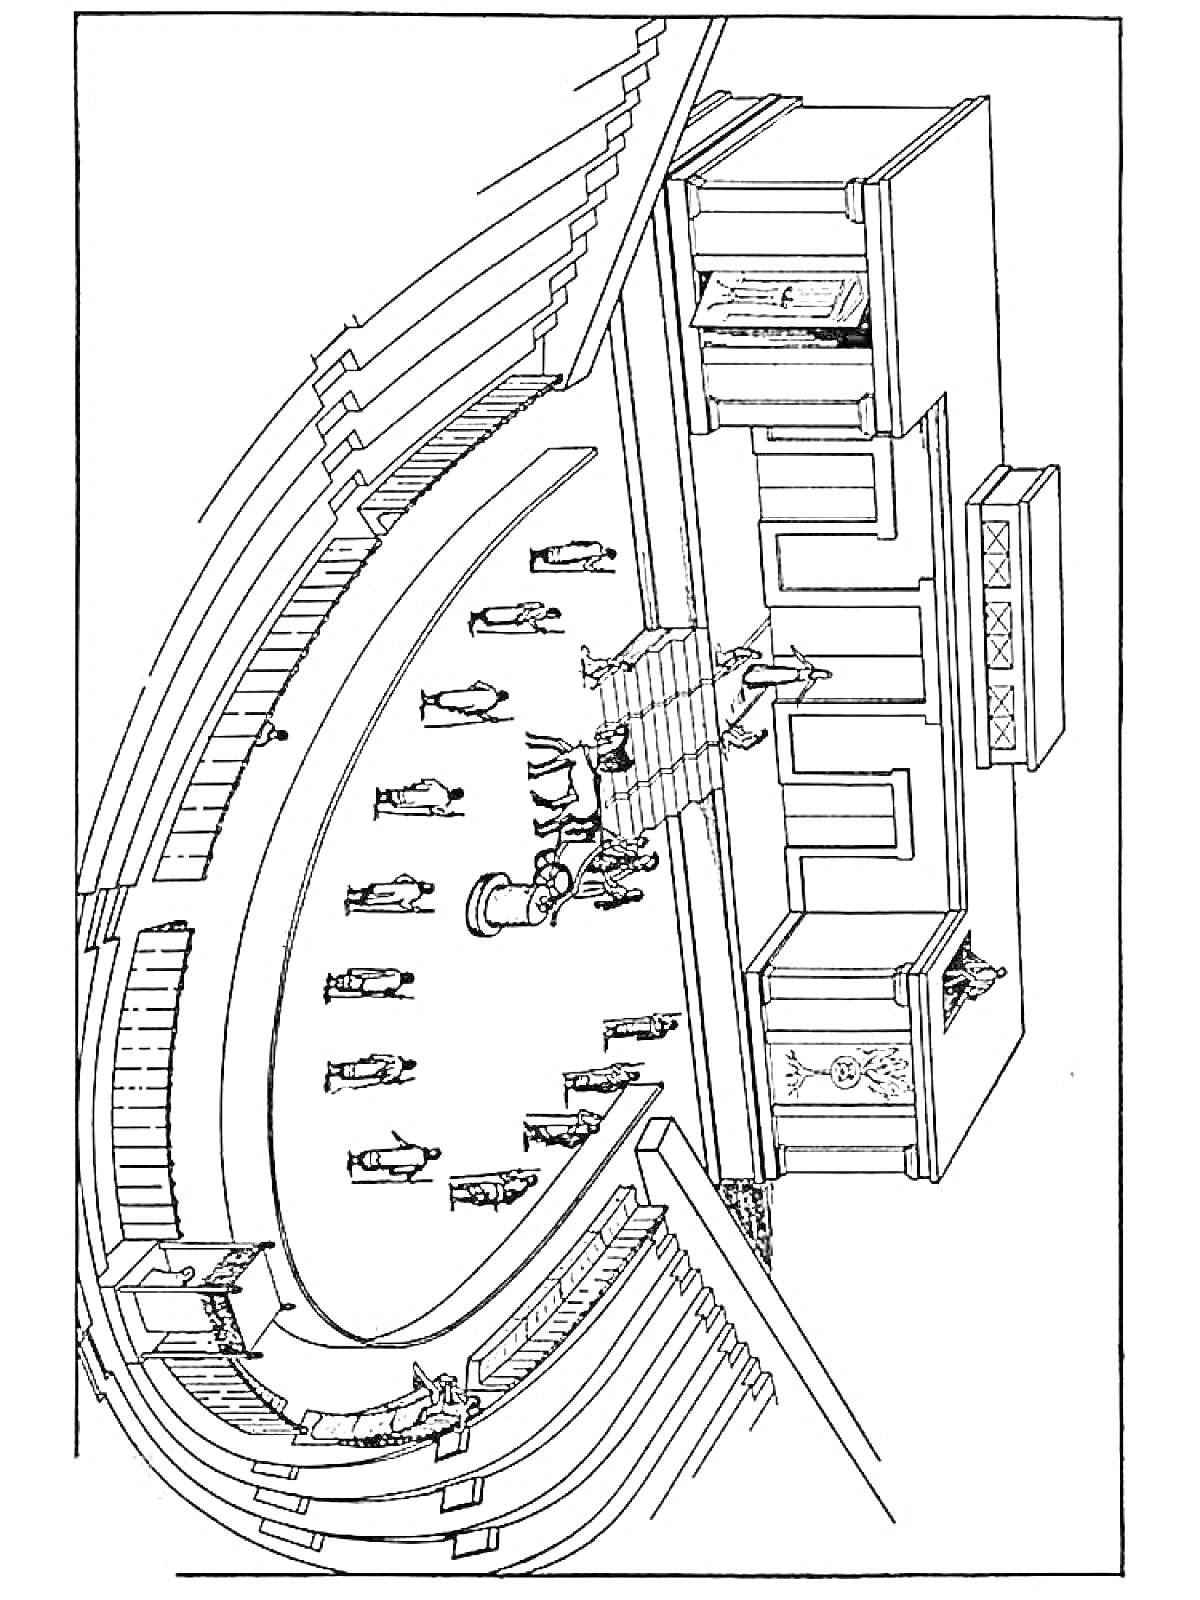 Раскраска Театр в Древней Греции с колоннадой и зрительскими рядами